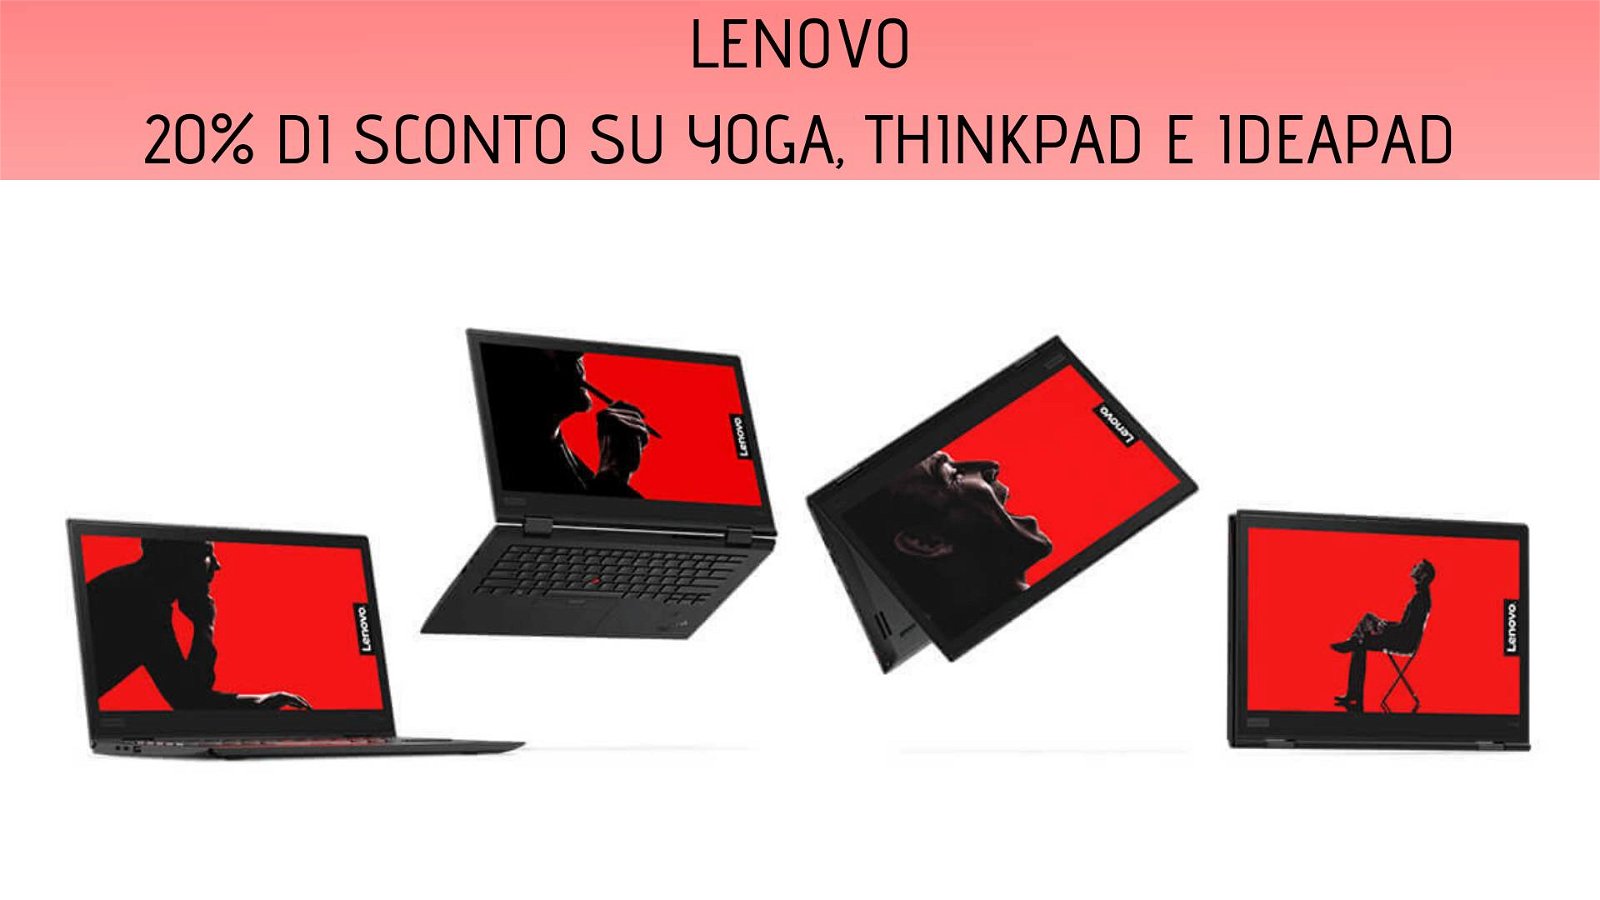 Immagine di Fino al 20% di sconto sui portatili Lenovo IdeaPad e Yoga